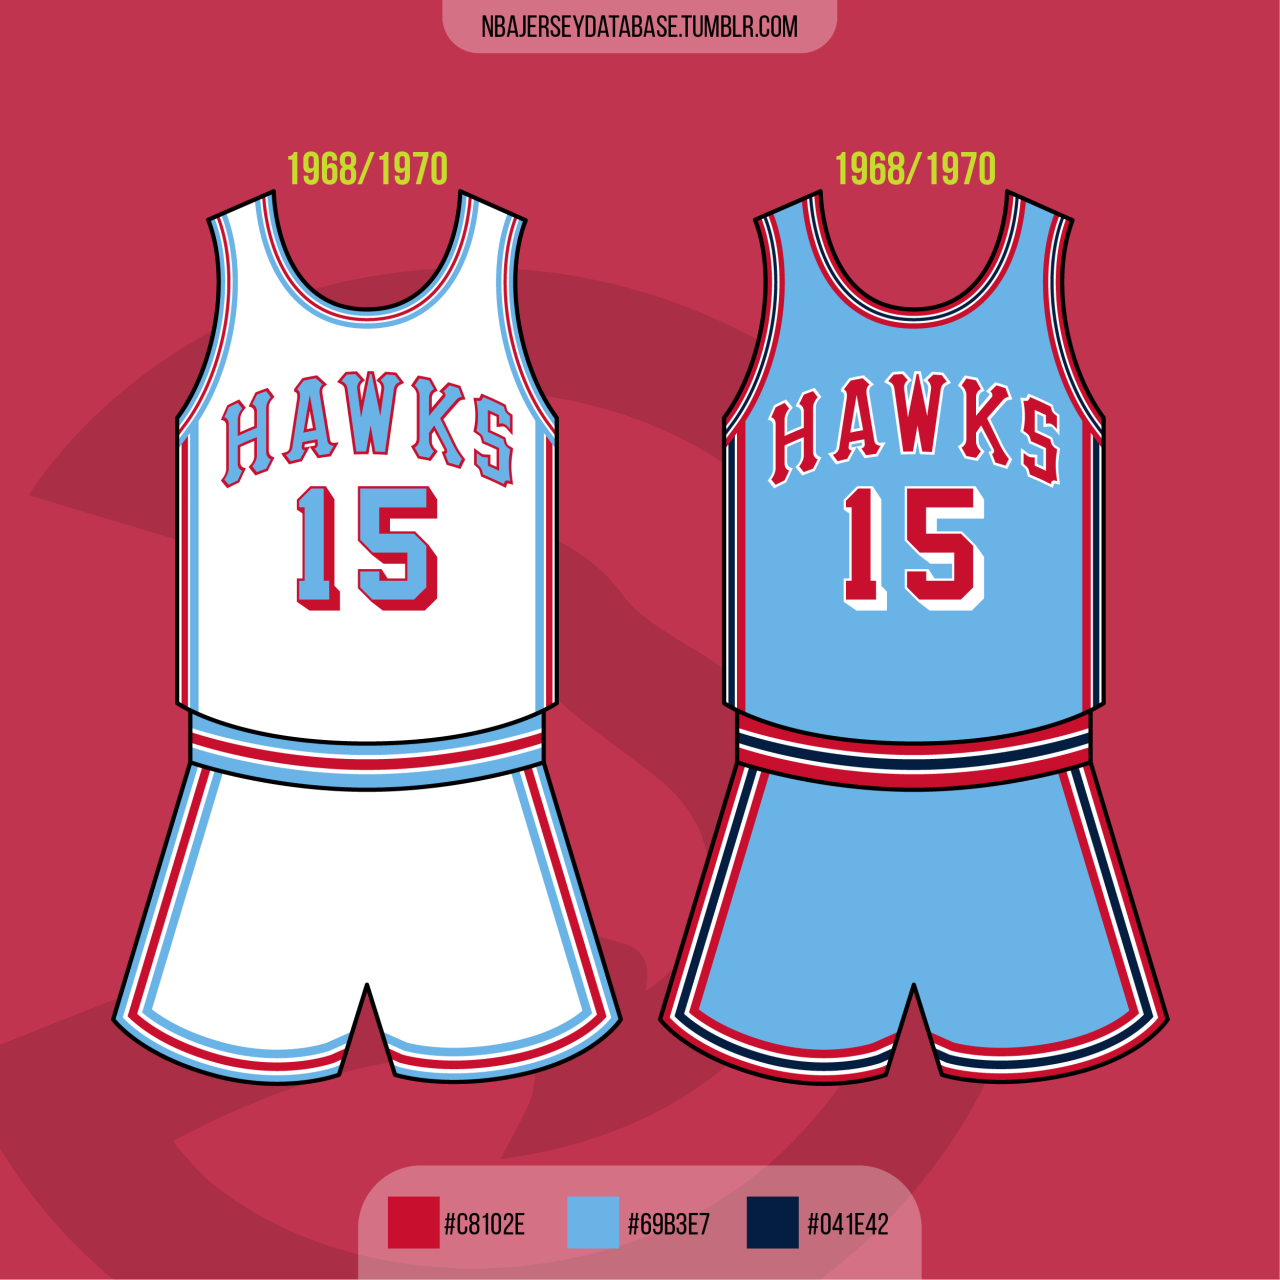 Atlanta Hawks History - Team Origins, Logos & Jerseys 